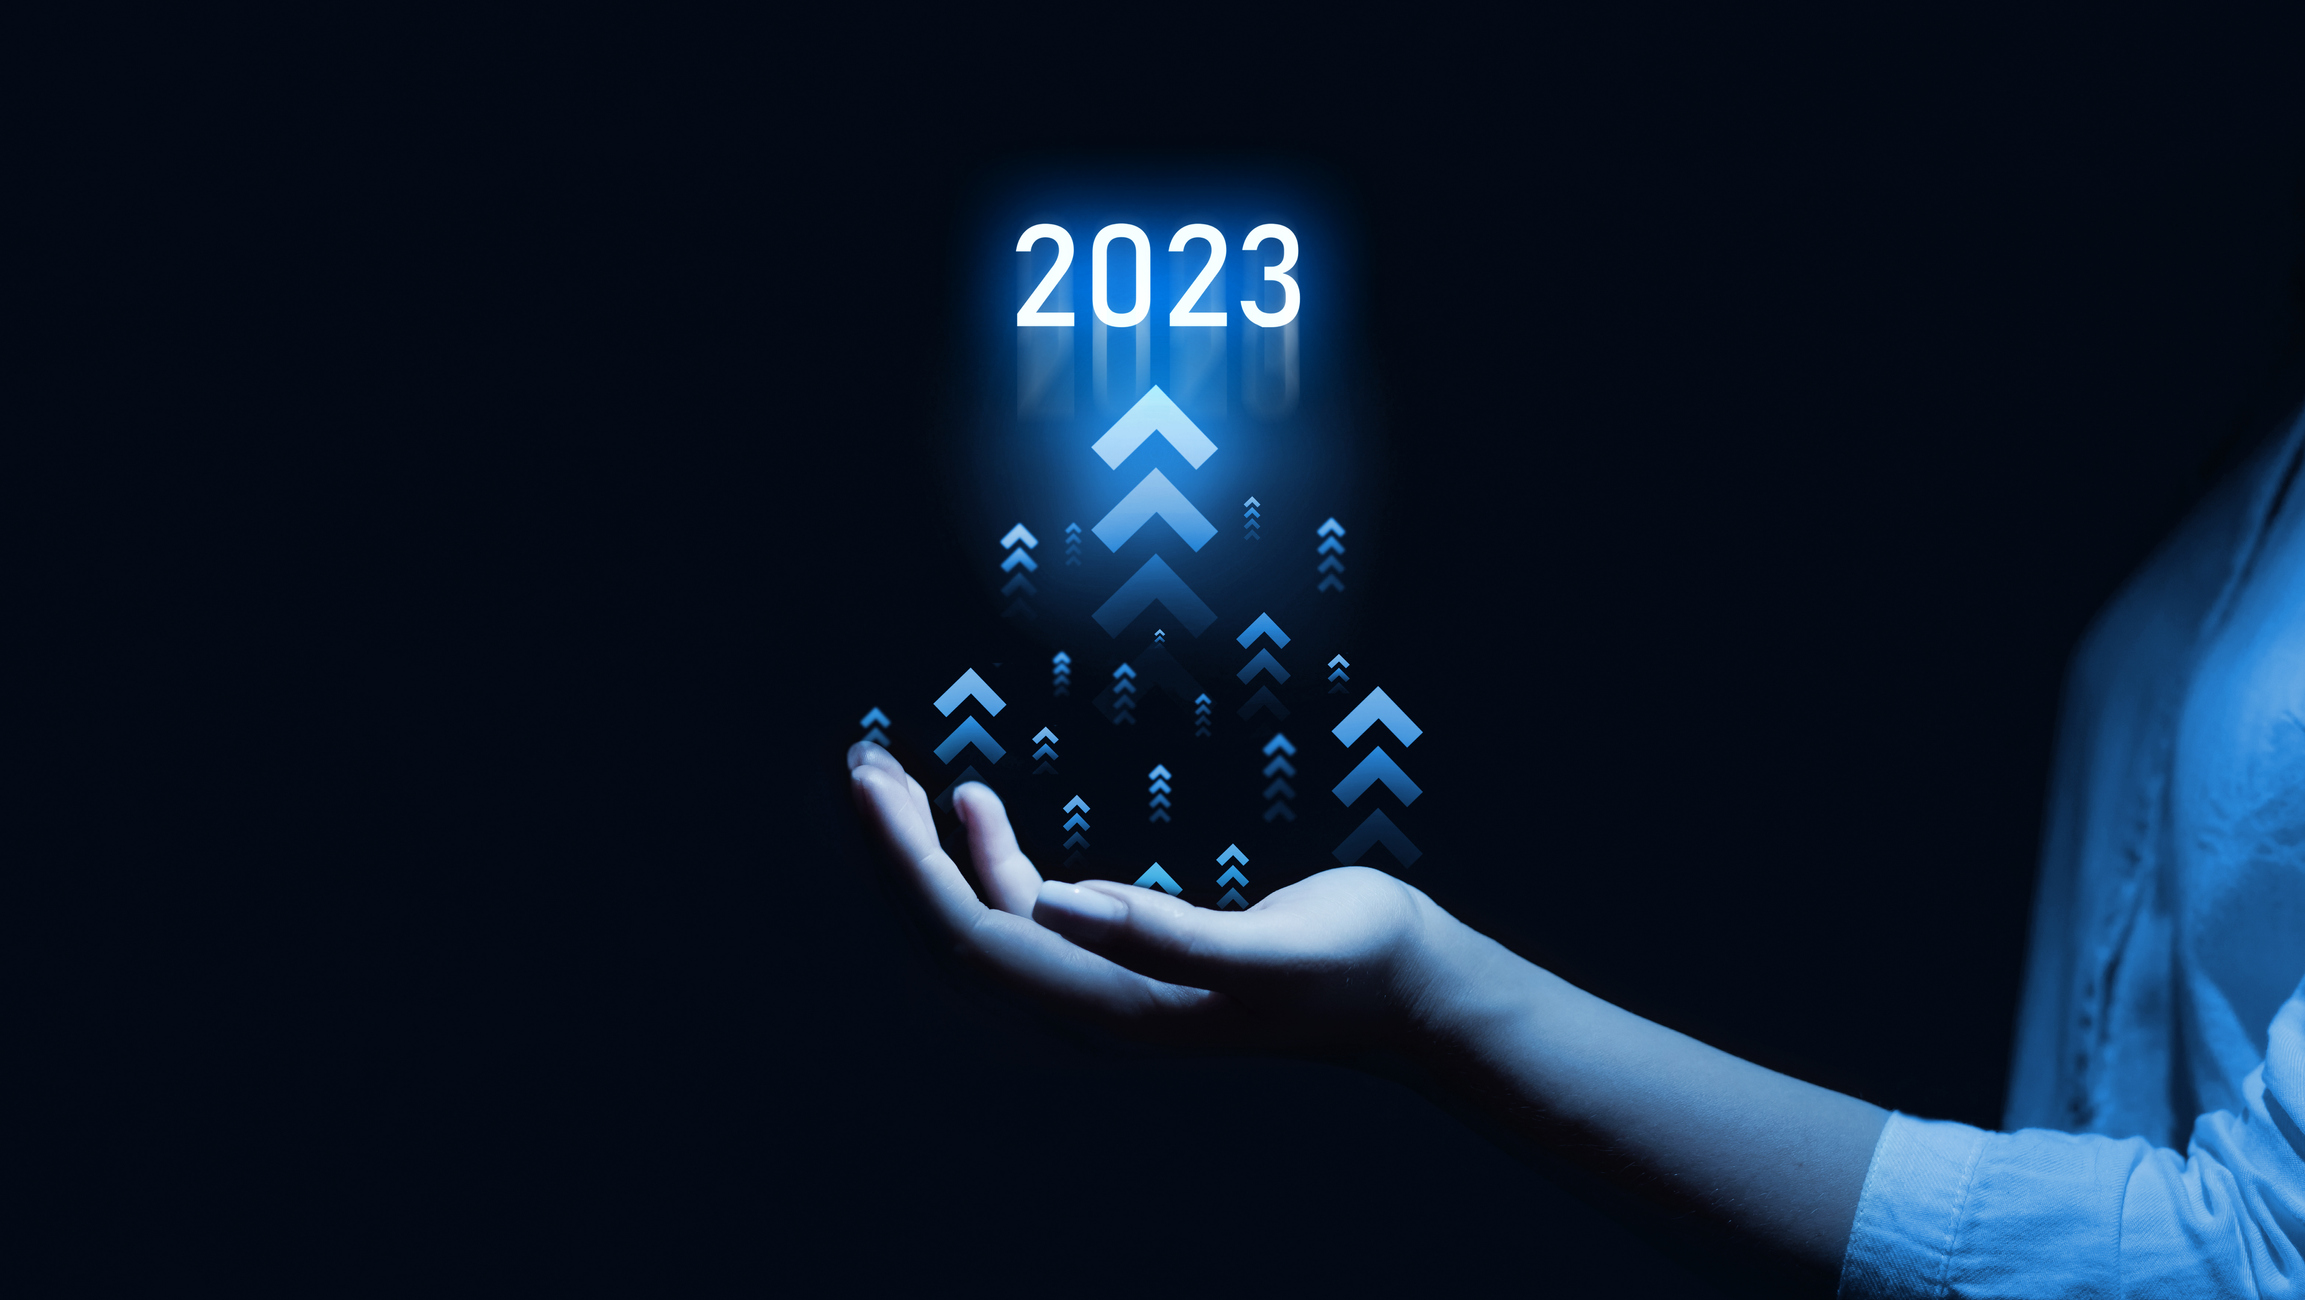 2023 Tech Trends